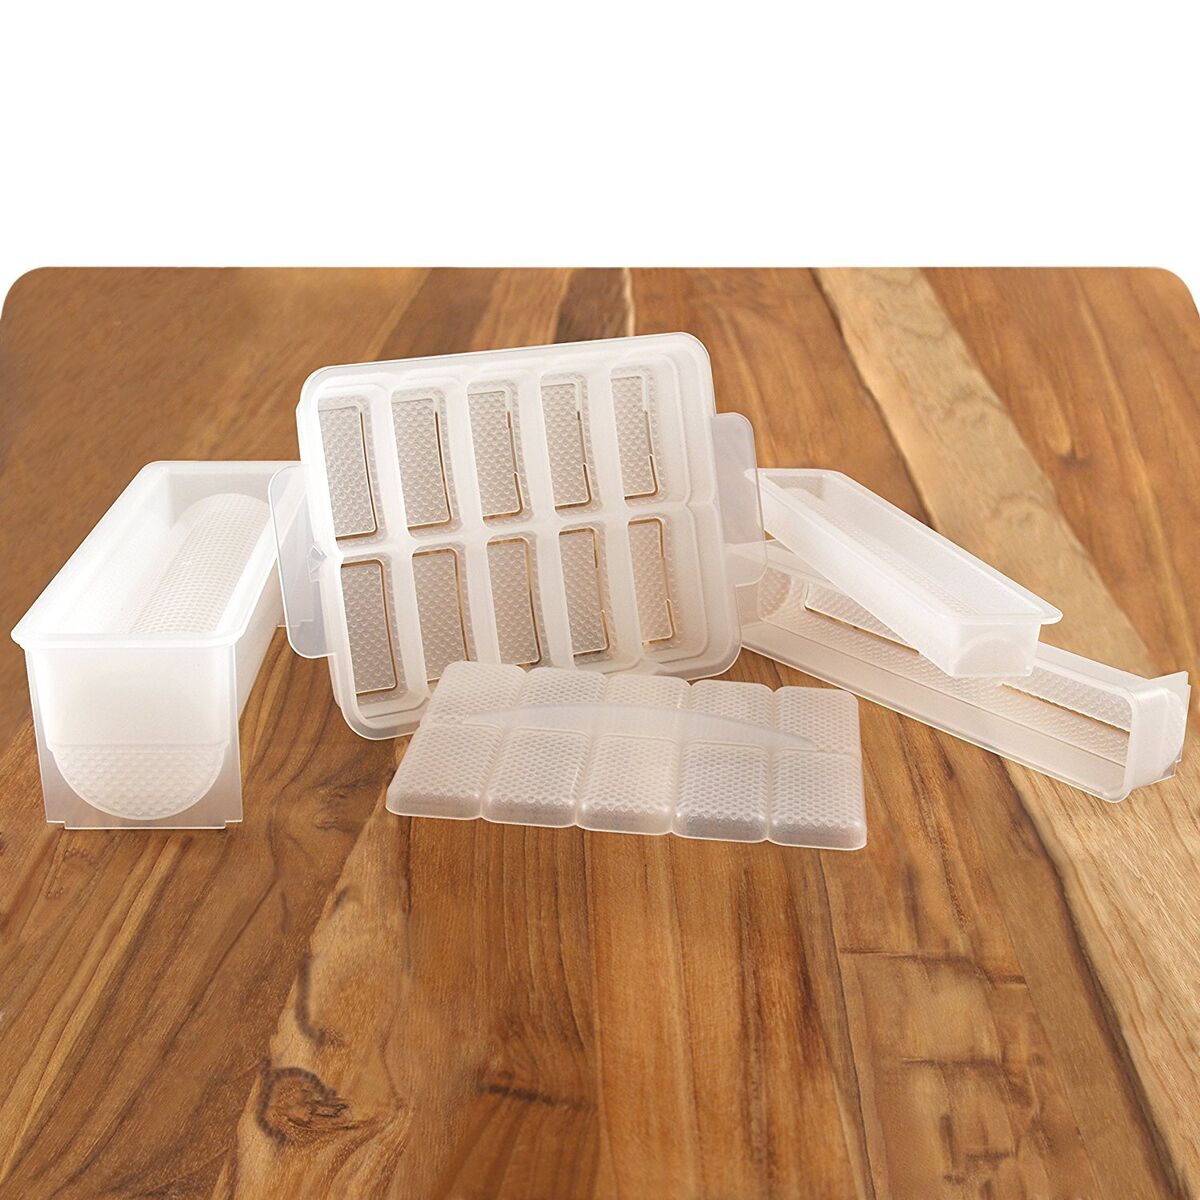 3pcs Sushi Mold Tool Set Plastic Kit For Making Nori & Sushi Rice